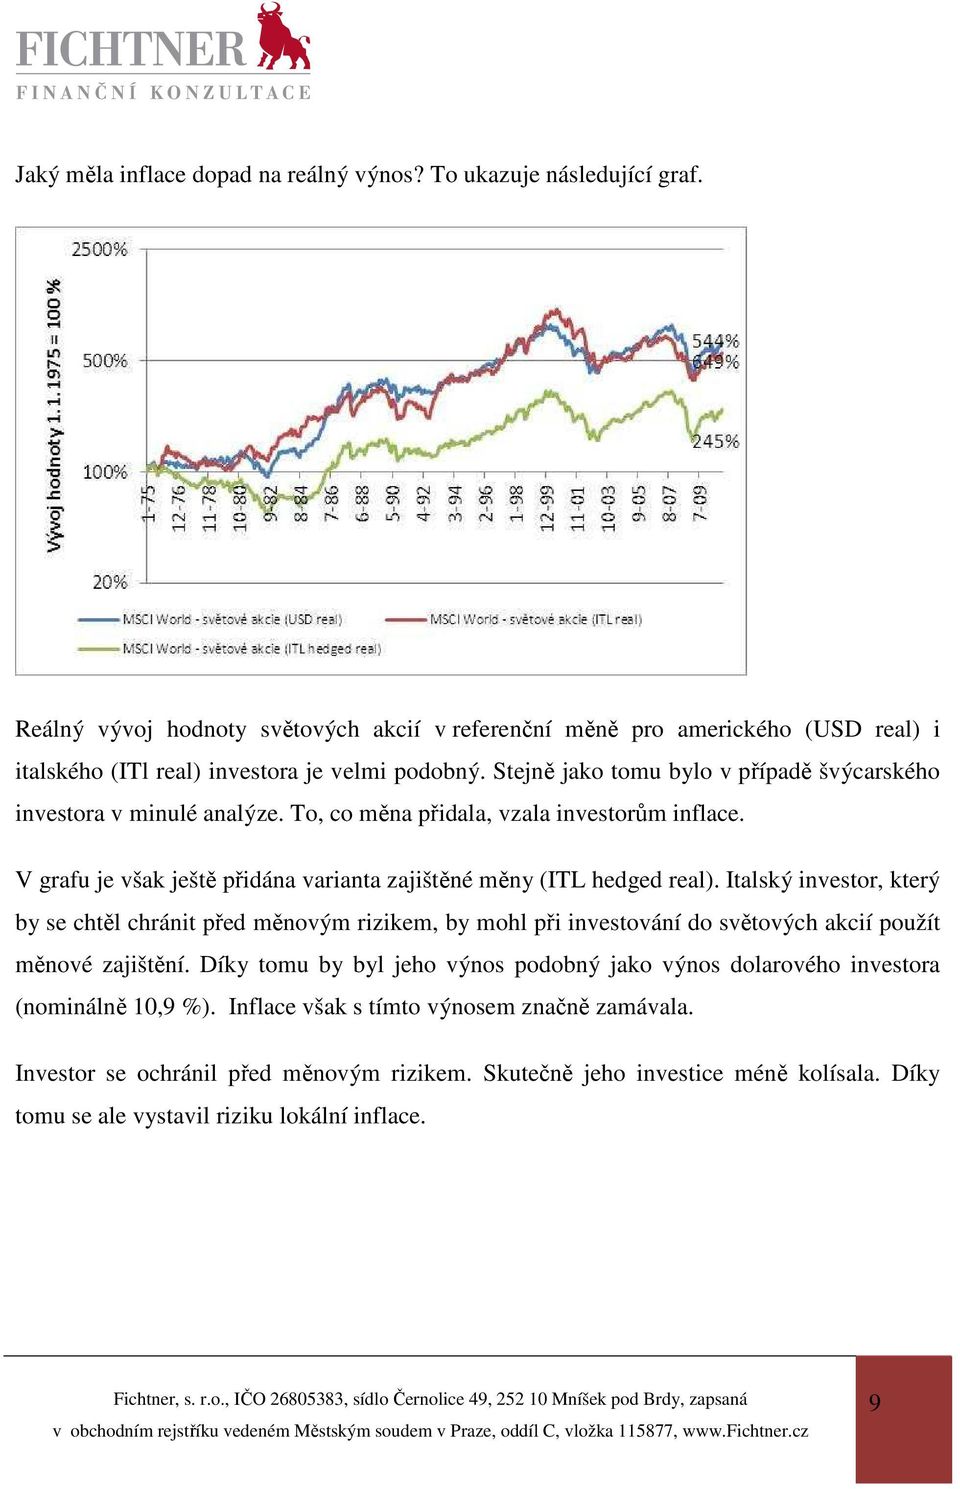 Stejně jako tomu bylo v případě švýcarského investora v minulé analýze. To, co měna přidala, vzala investorům inflace. V grafu je však ještě přidána varianta zajištěné měny (ITL hedged real).